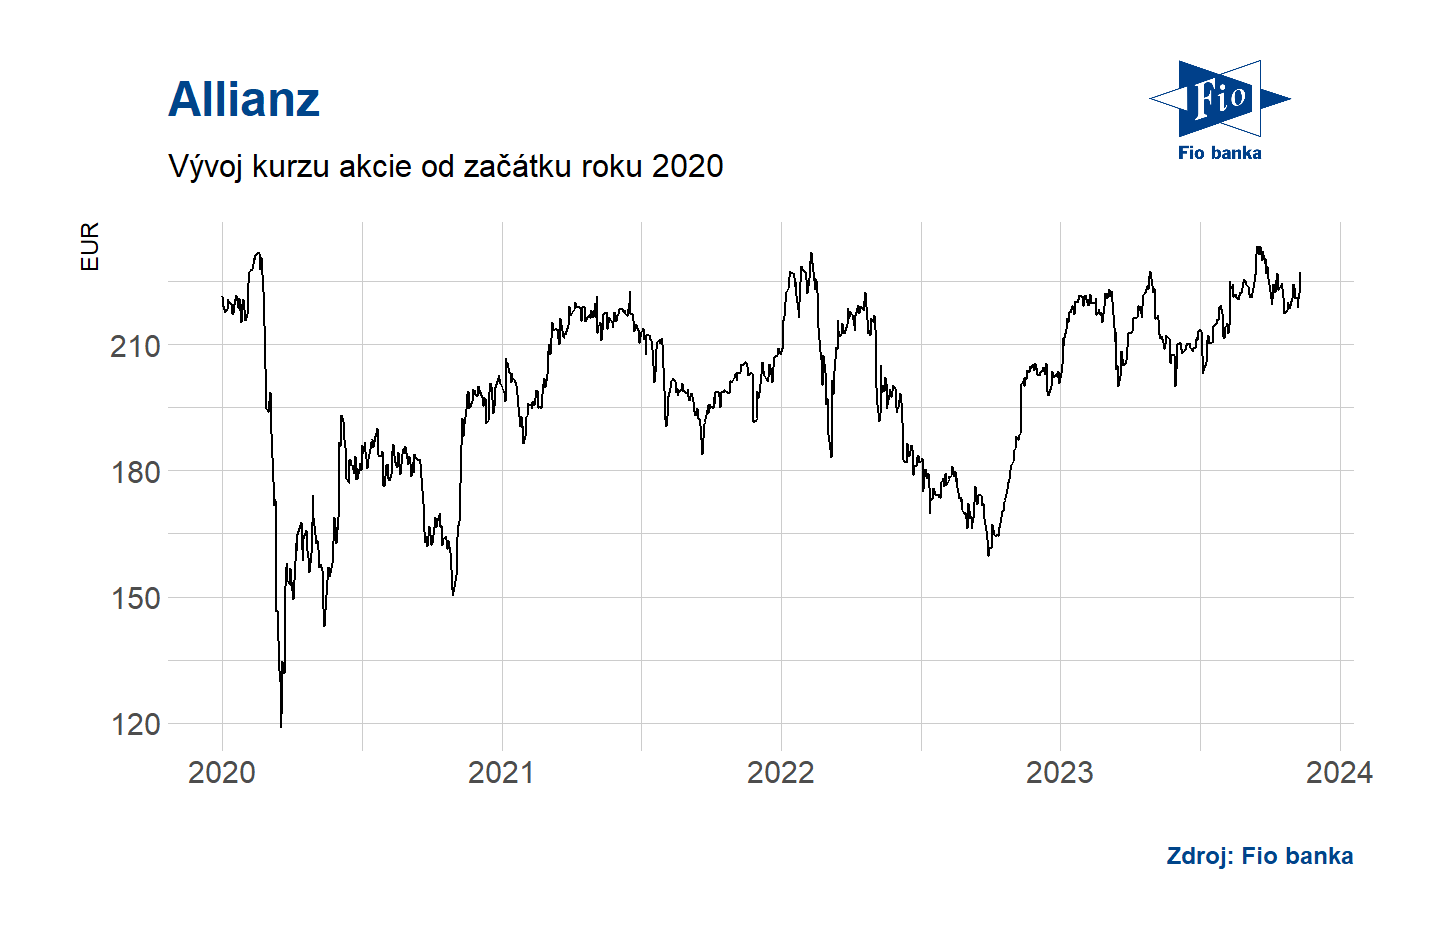 Vývoj akcií Allianz